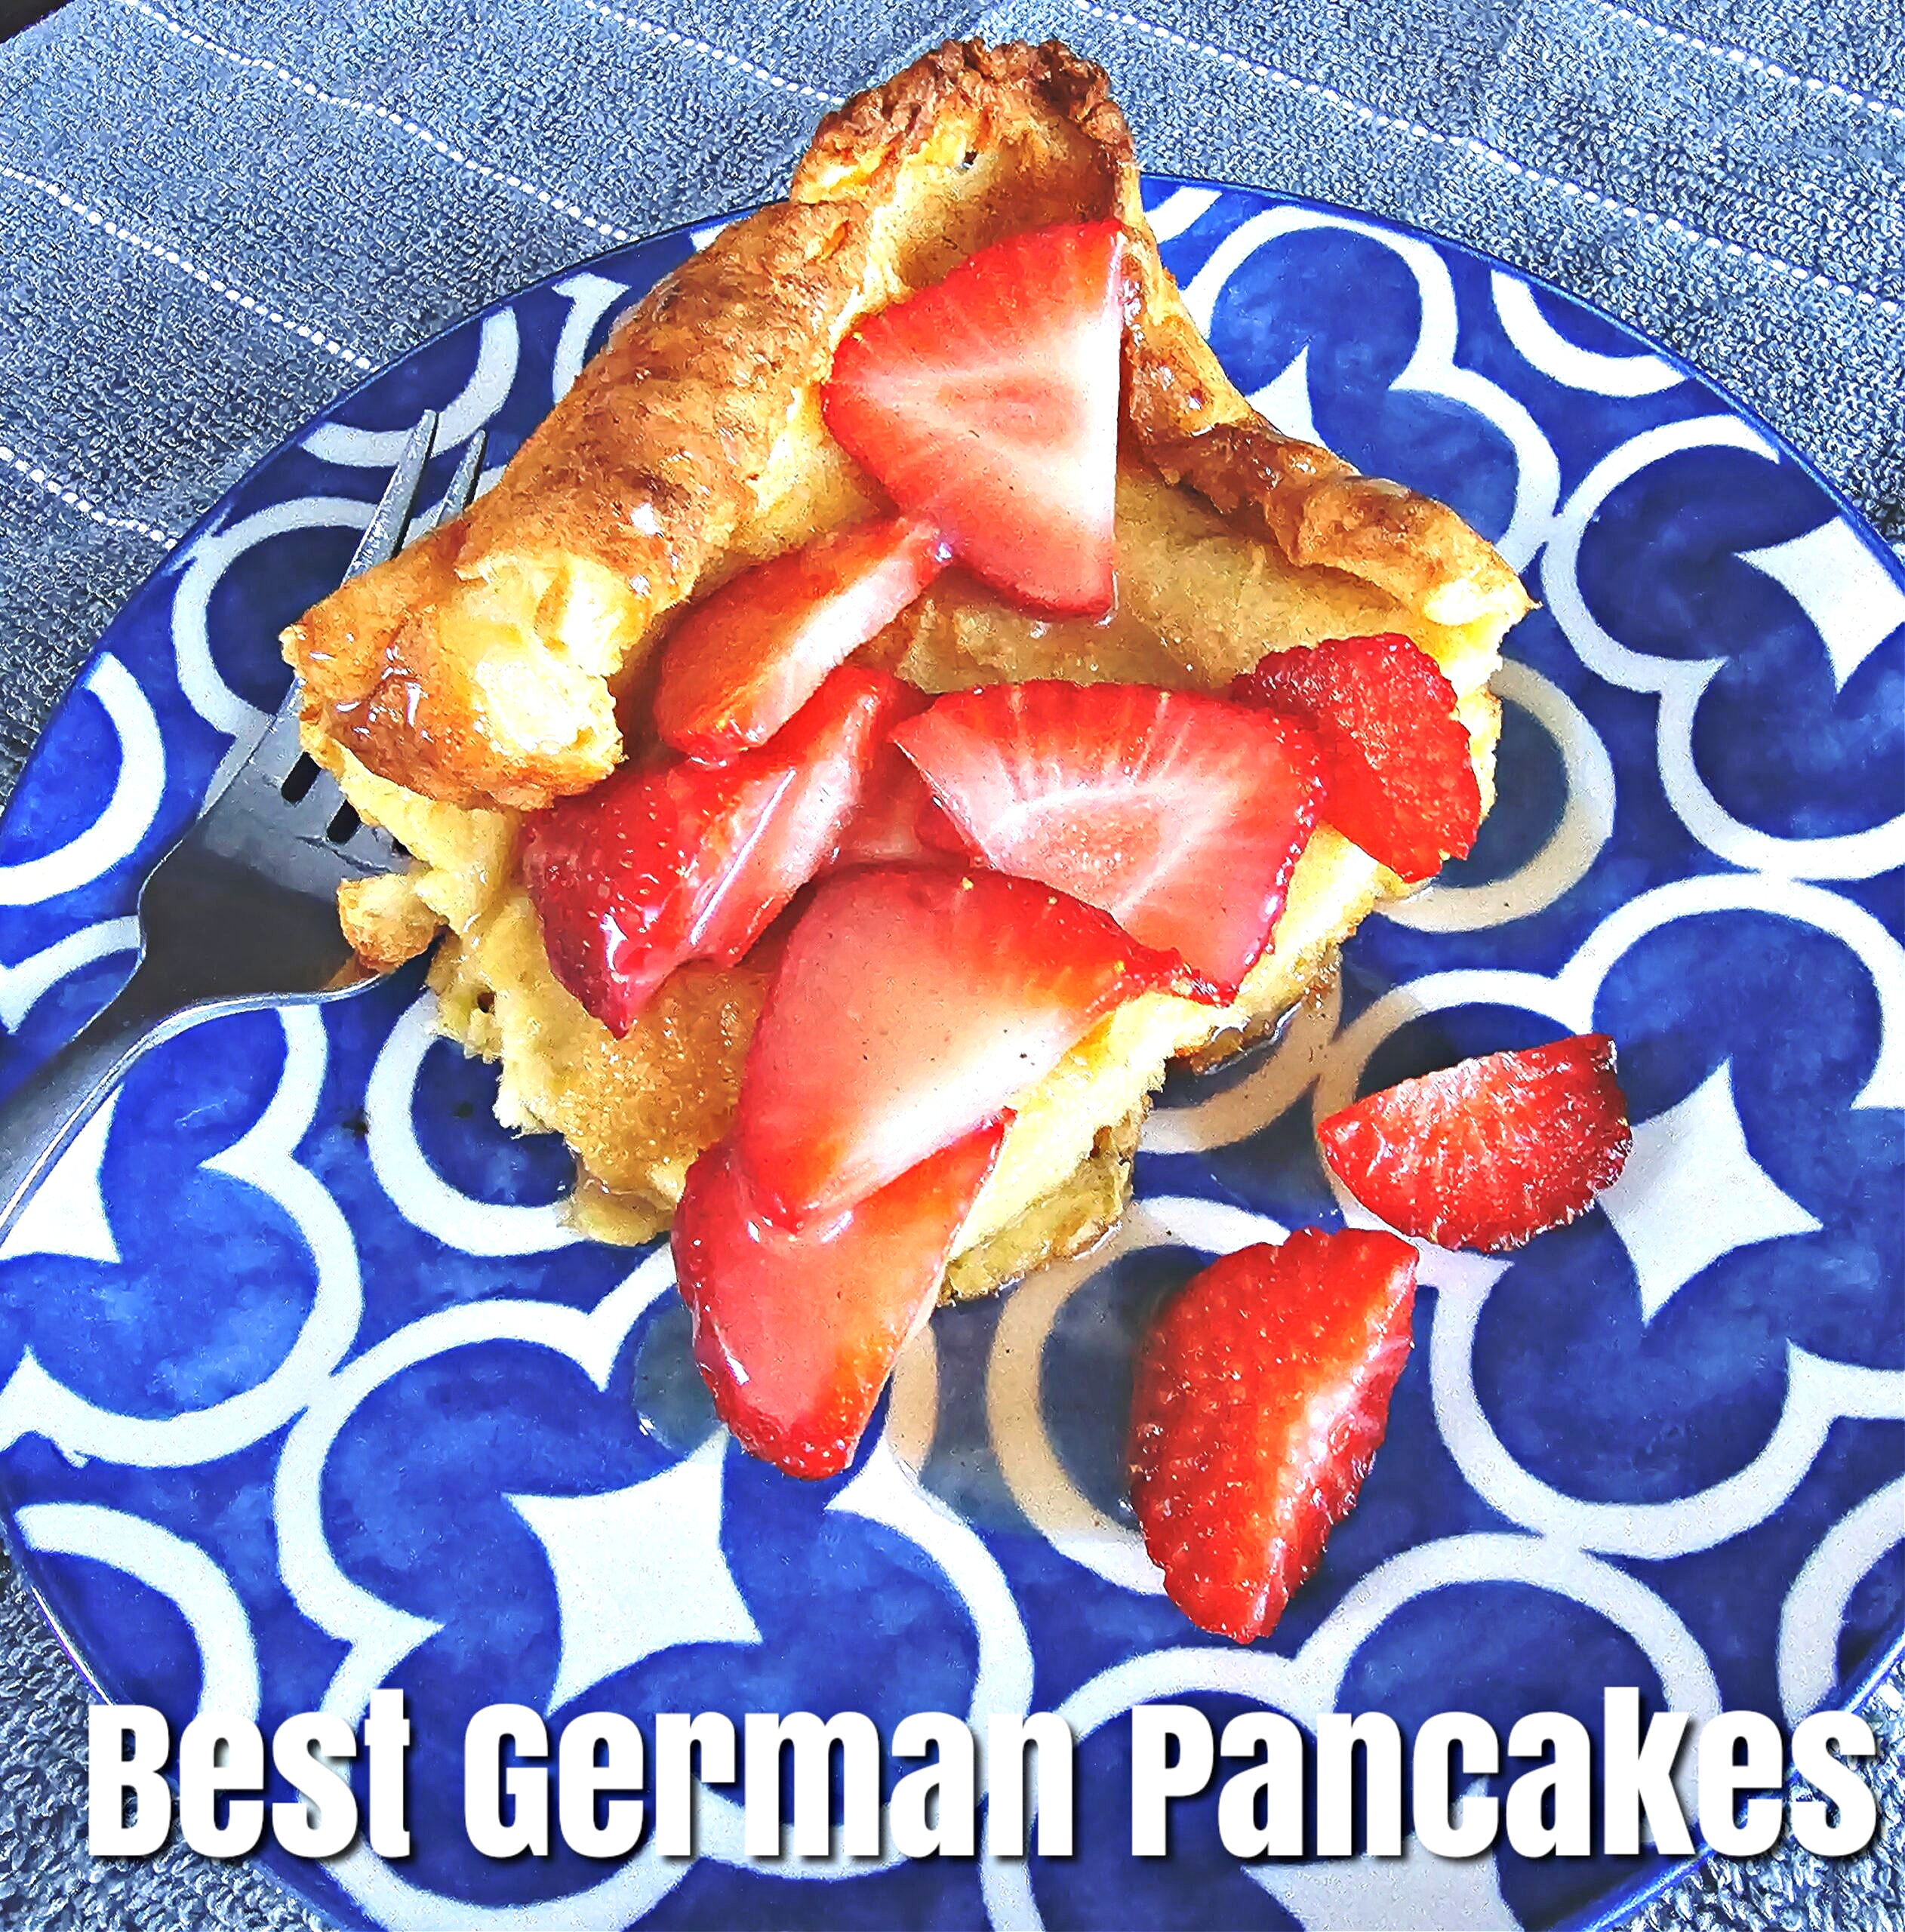 Best Ever German Pancakes #pancakes #germanpancakes #breakfast #brunch #dinner #bestrecipe